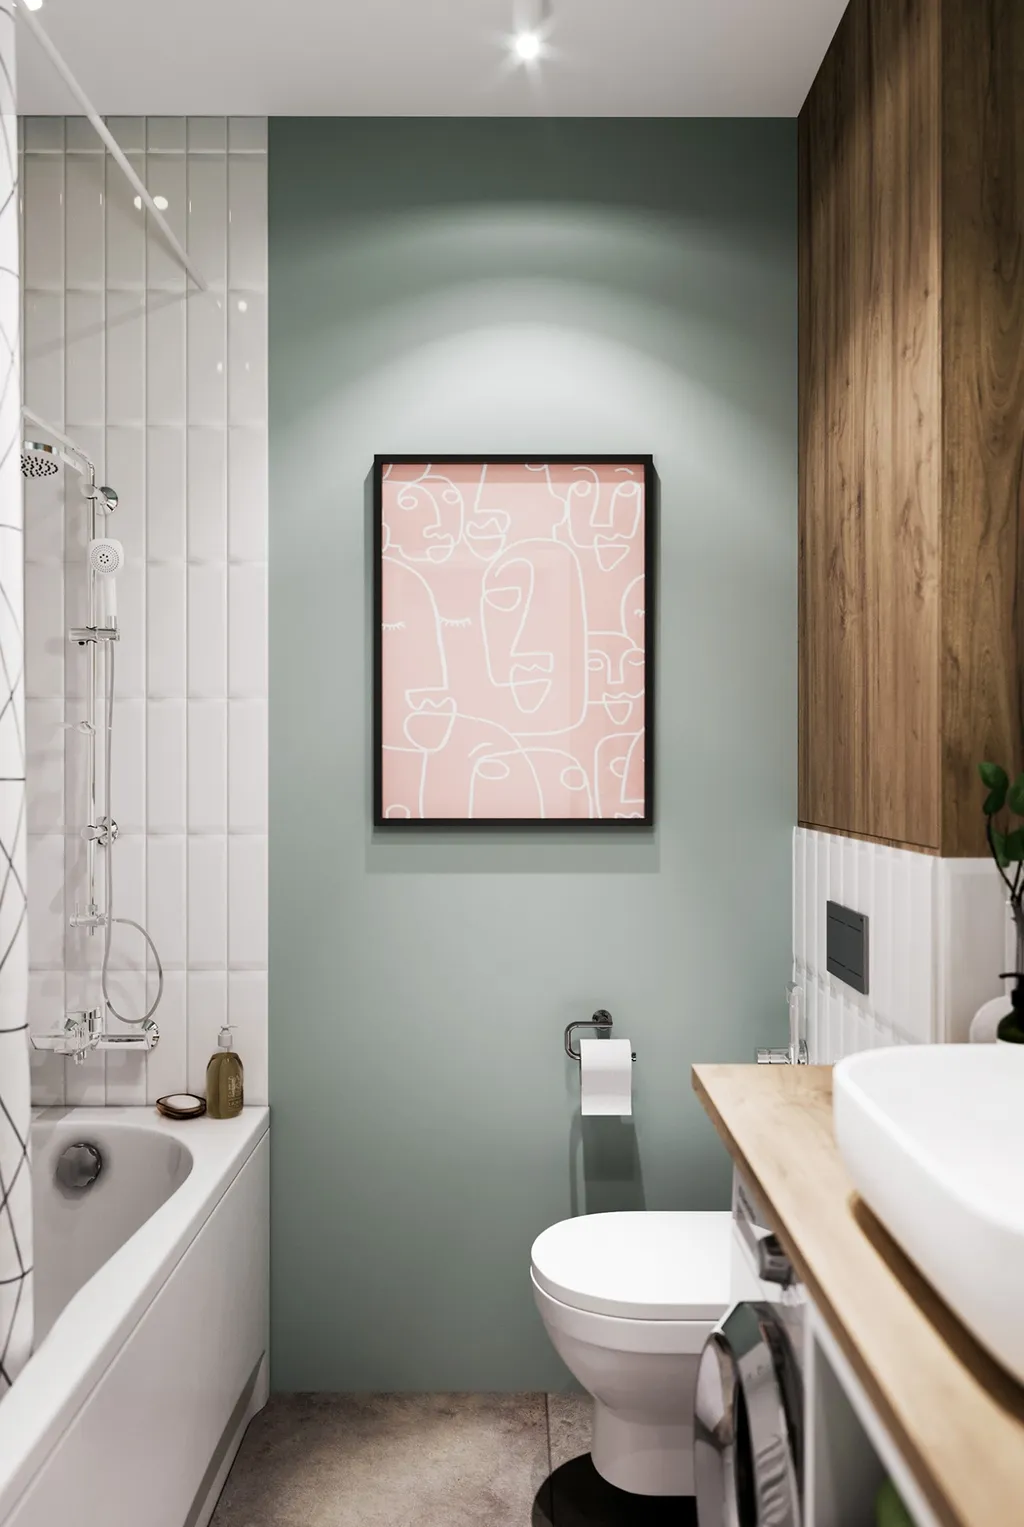 Công trình hoàn thiện nội thất phòng tắm cho căn hộ theo phong cách Scandinavian & Color Block. Thi công hoàn thiện bởi TD INTERIOR.